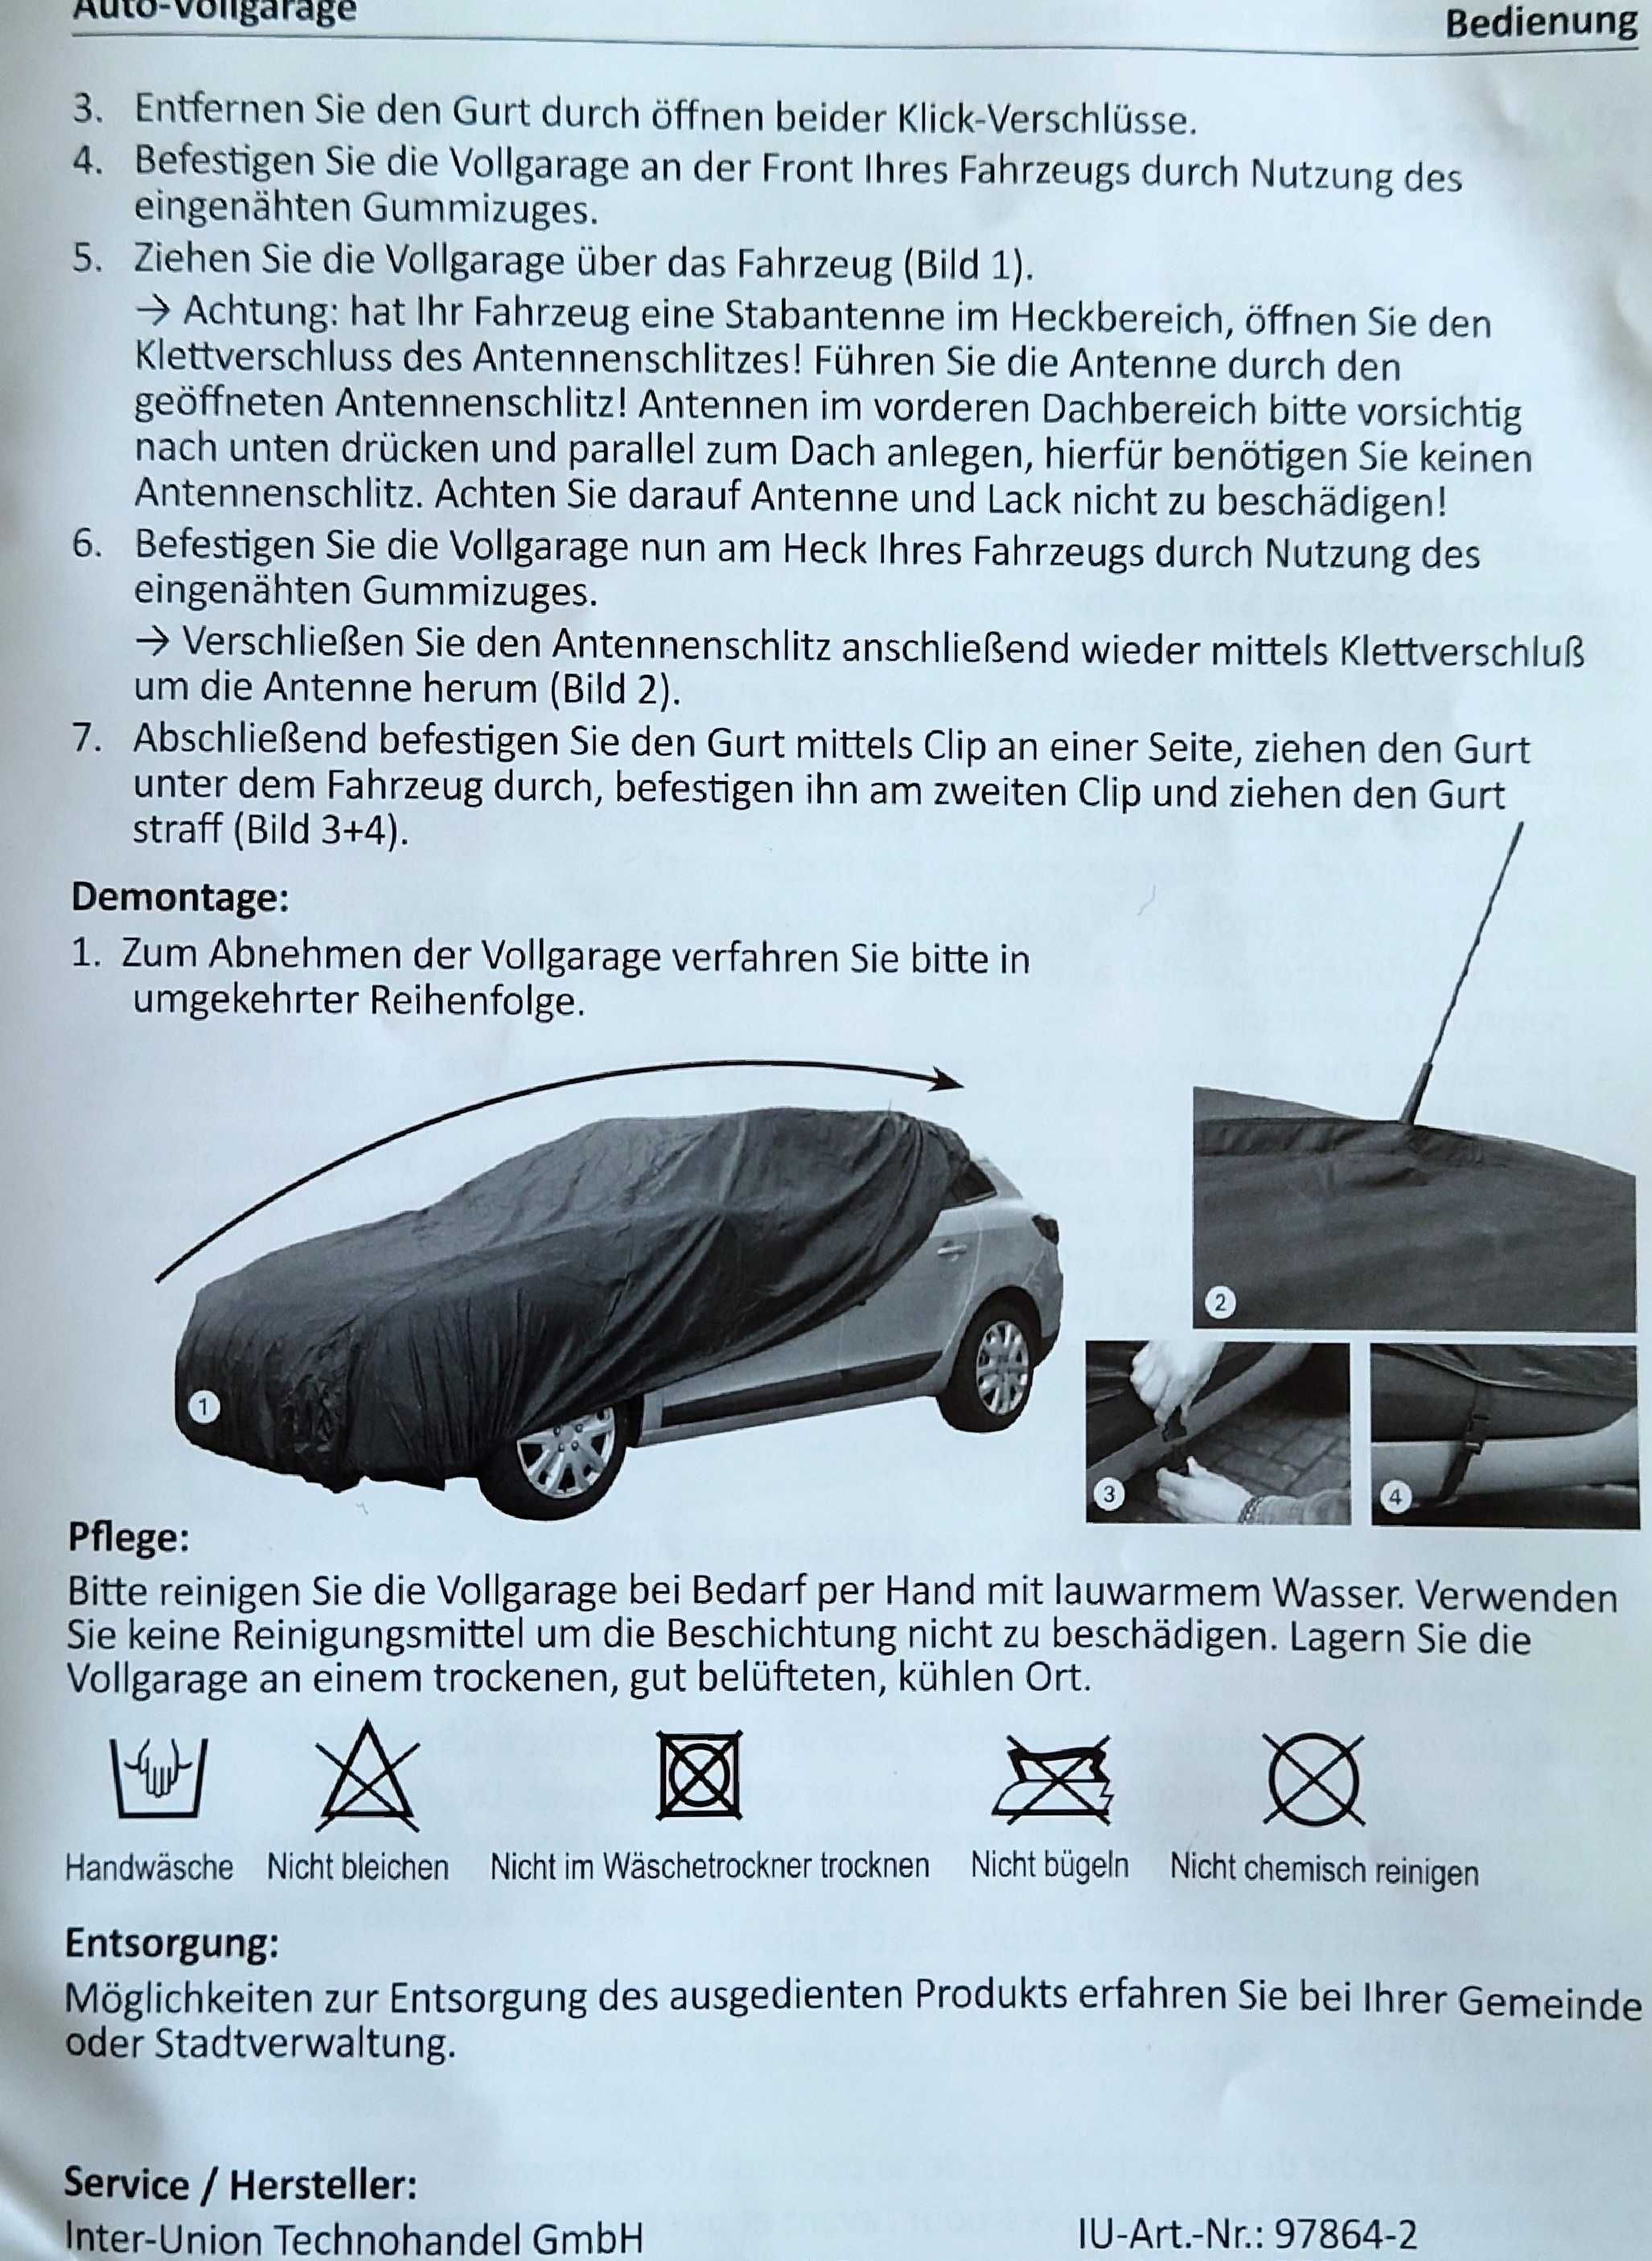 Покривало за SUV, Джип, Автомобил тип "Баничарка". Made in Germany.